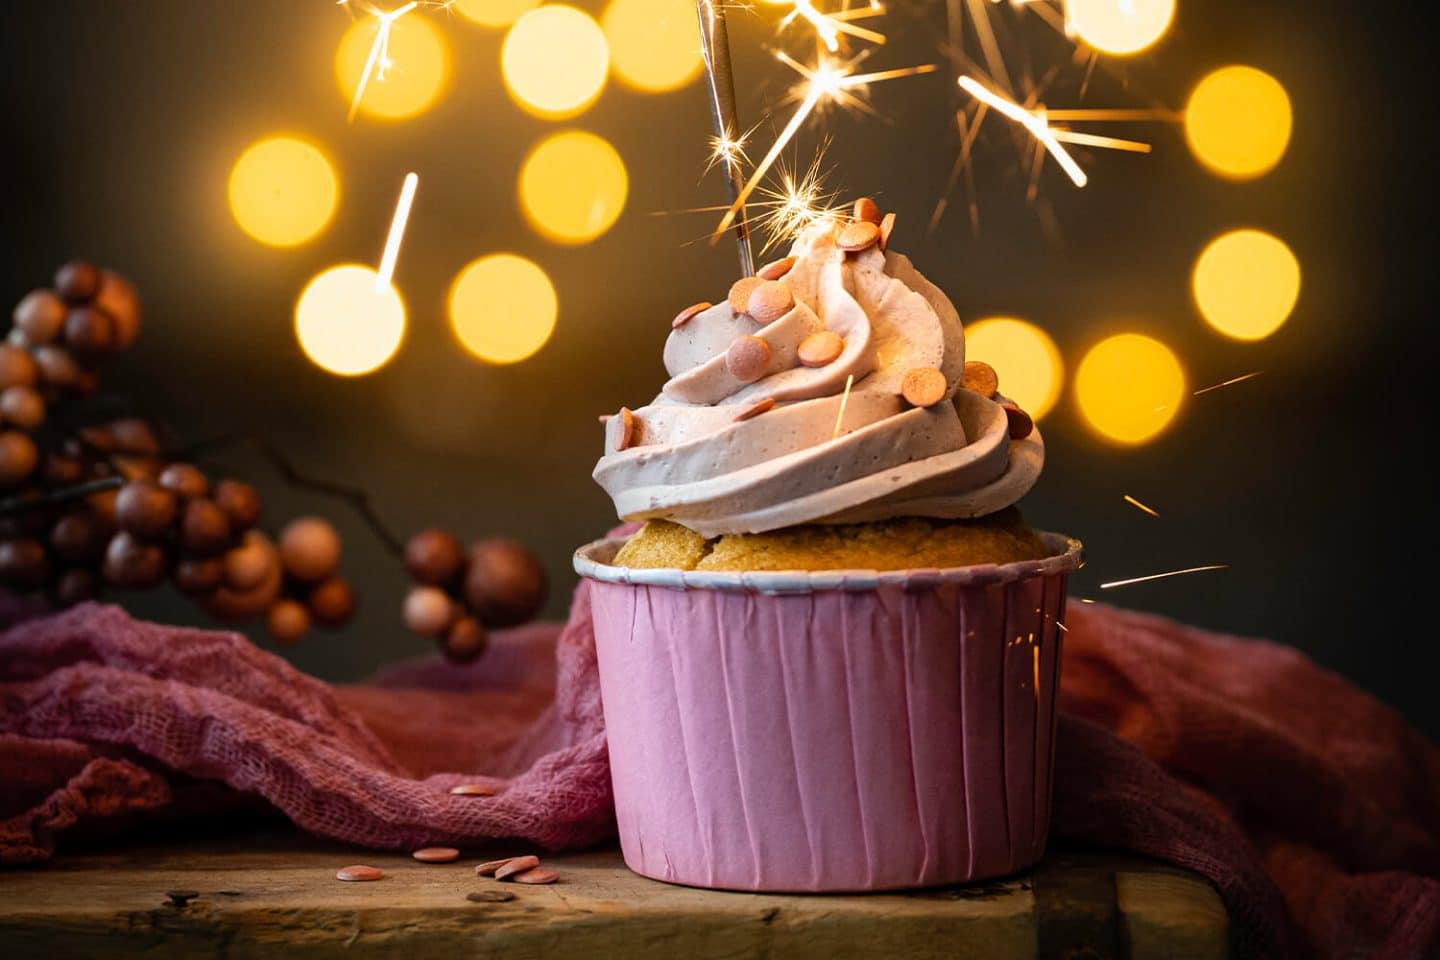 Vanille-Cupcakes mit Schwarzer Johannisbeere